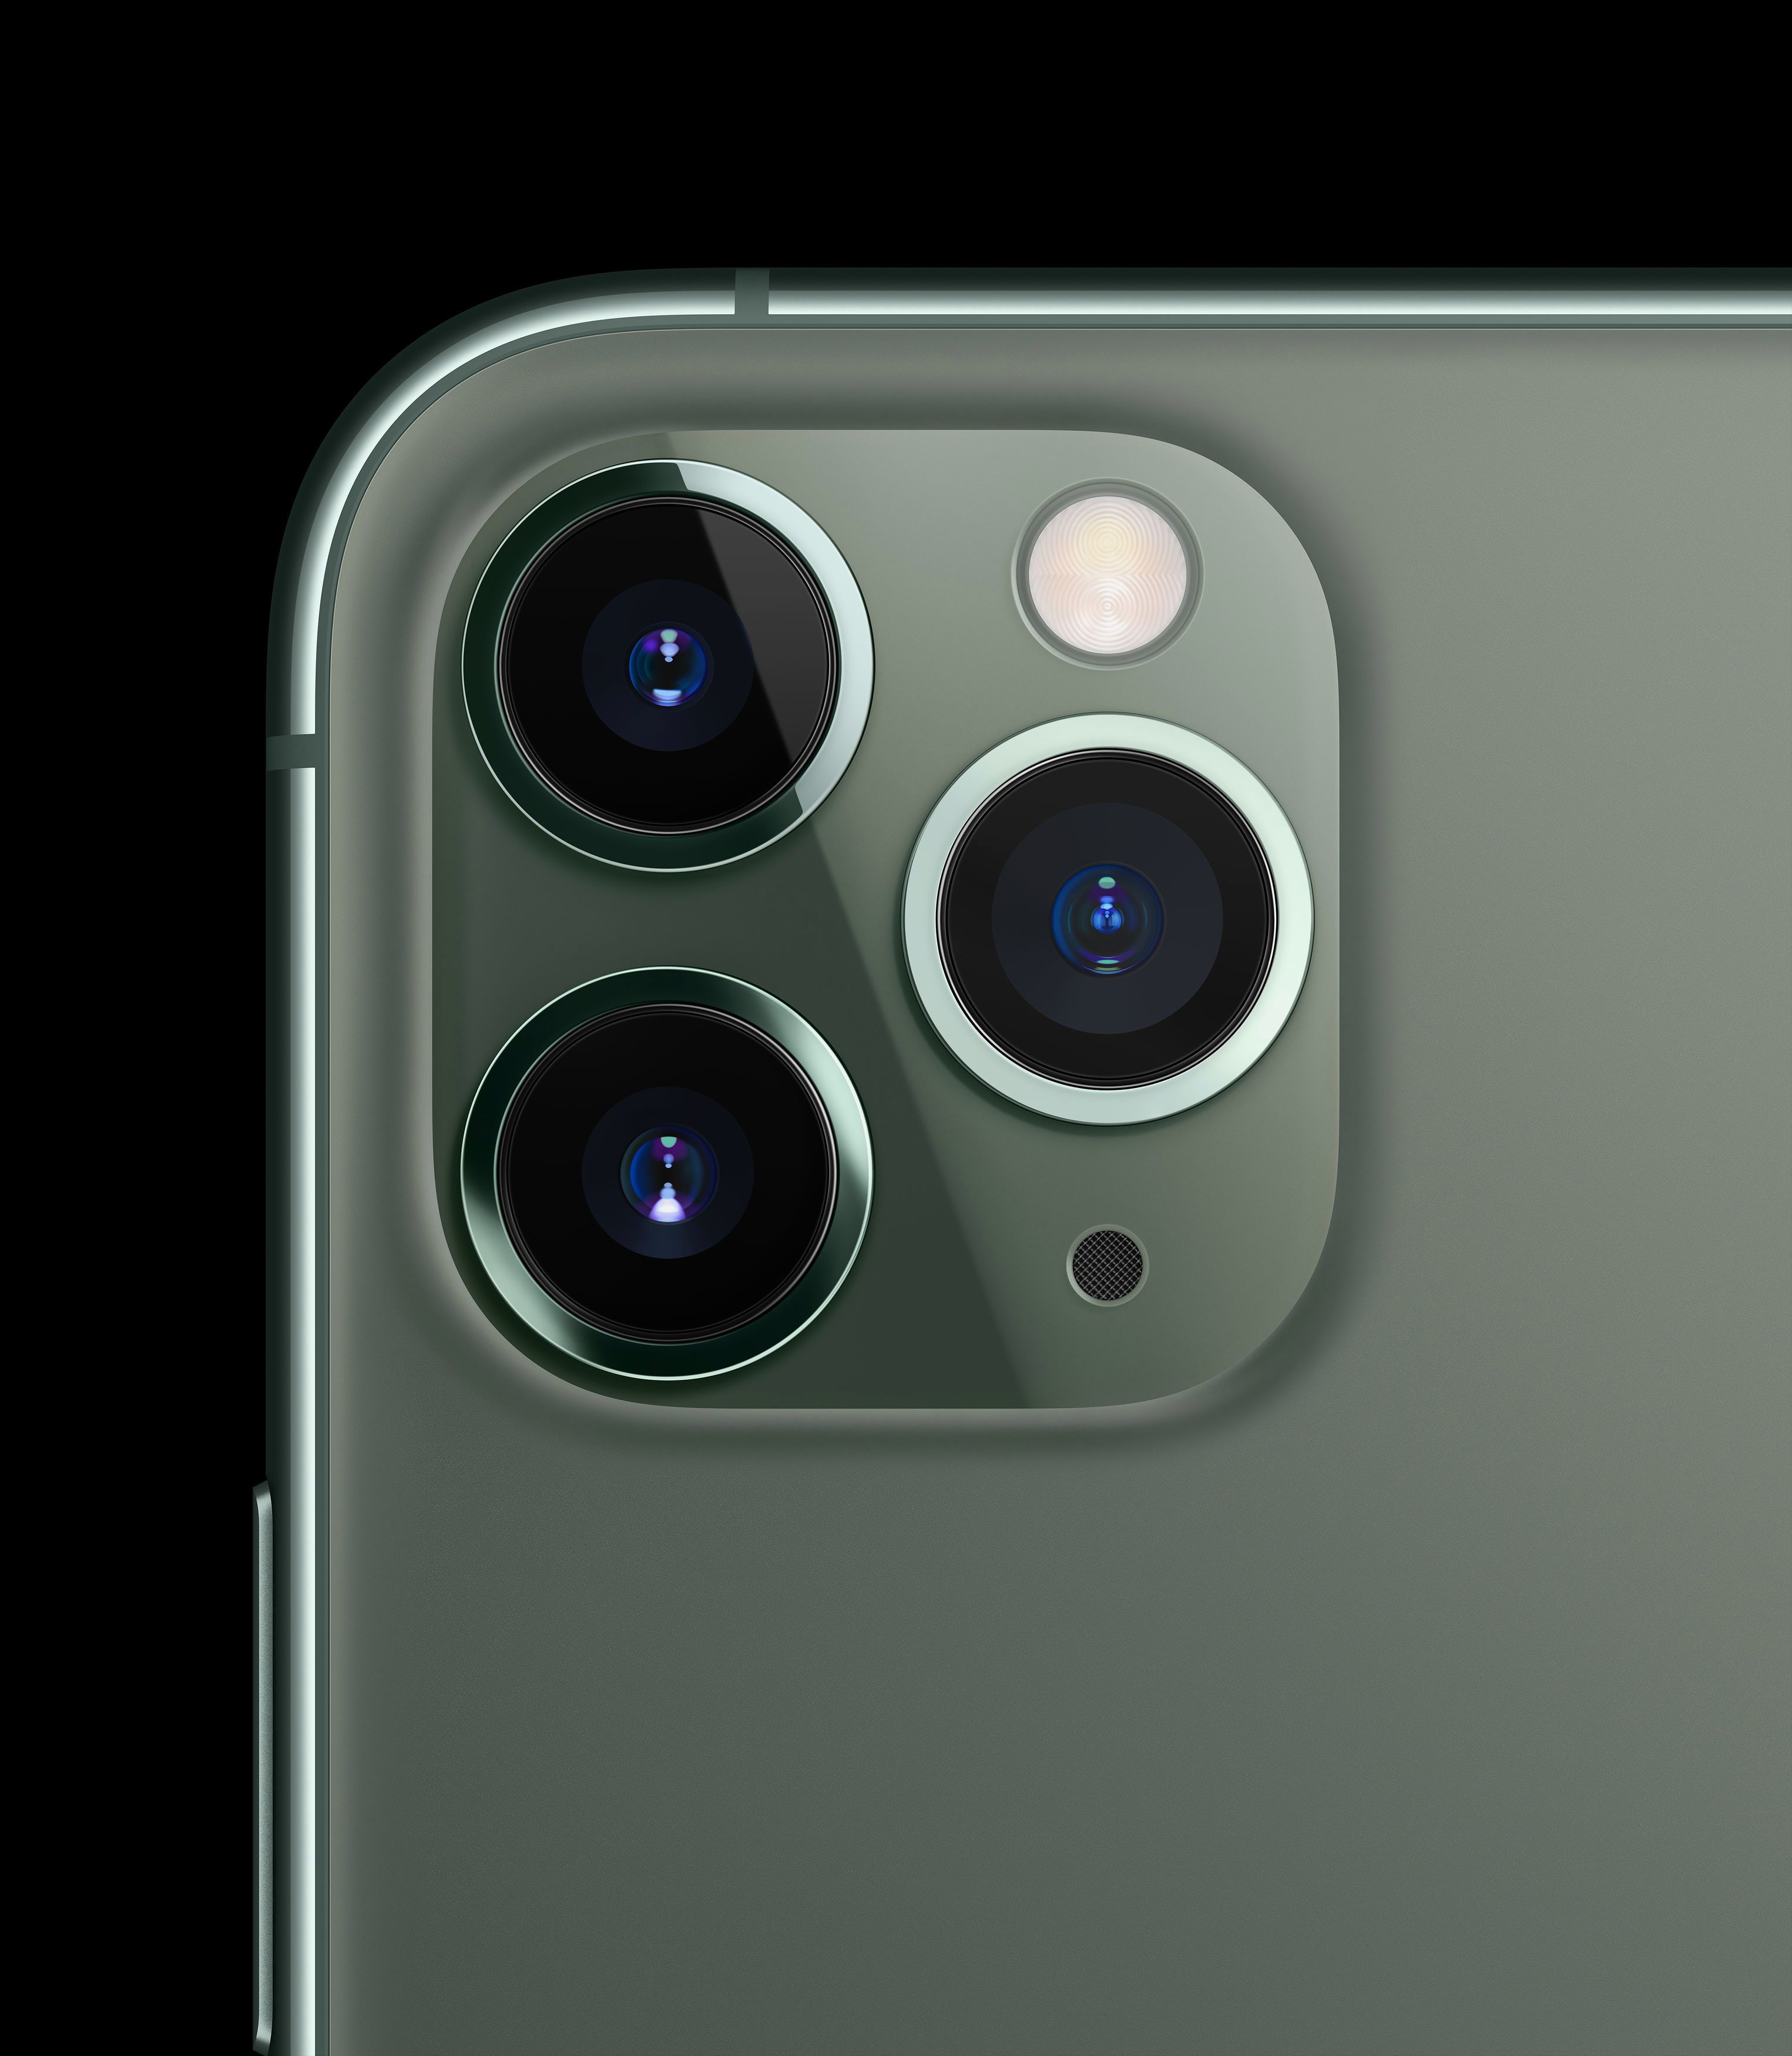         Thiết kế IPhone 11 Pro có camera tele 12 megapixel, với khẩu độ f / 2.0 cái nào lớn hơn, tiêu cự là 52mm và OIS cũng vậy